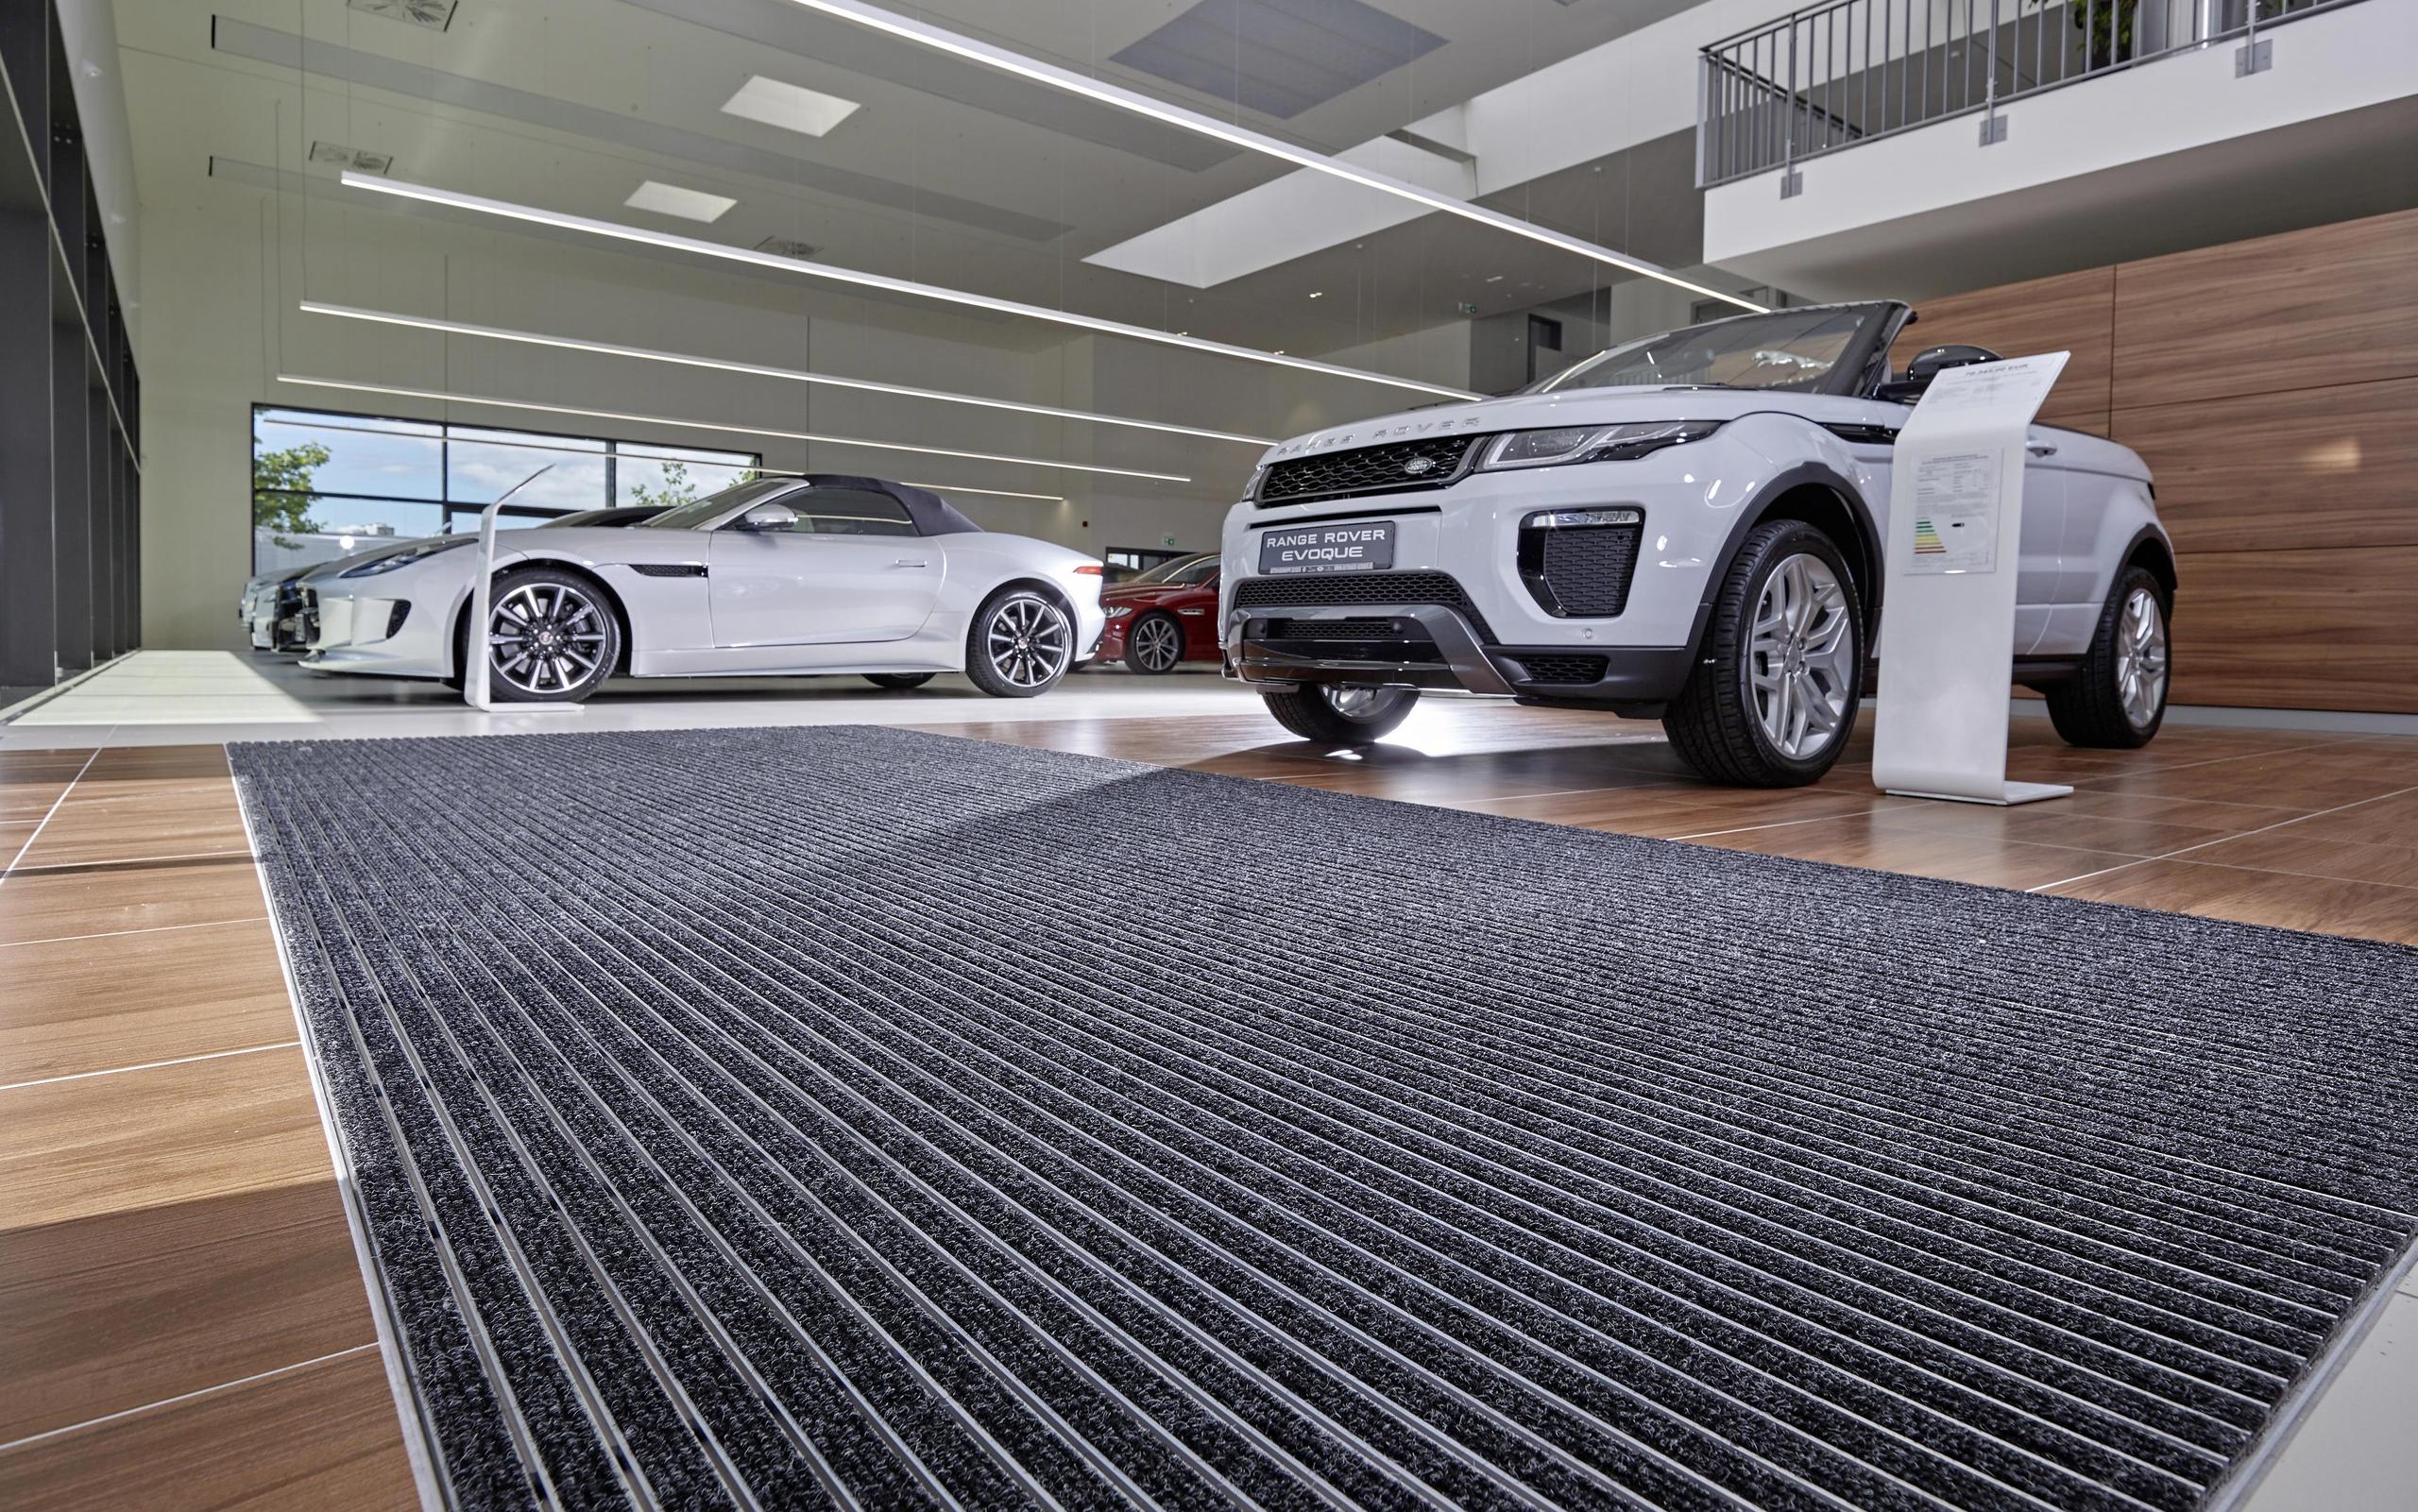 Fußmatten für Autohäuser und Ausstellungsräume